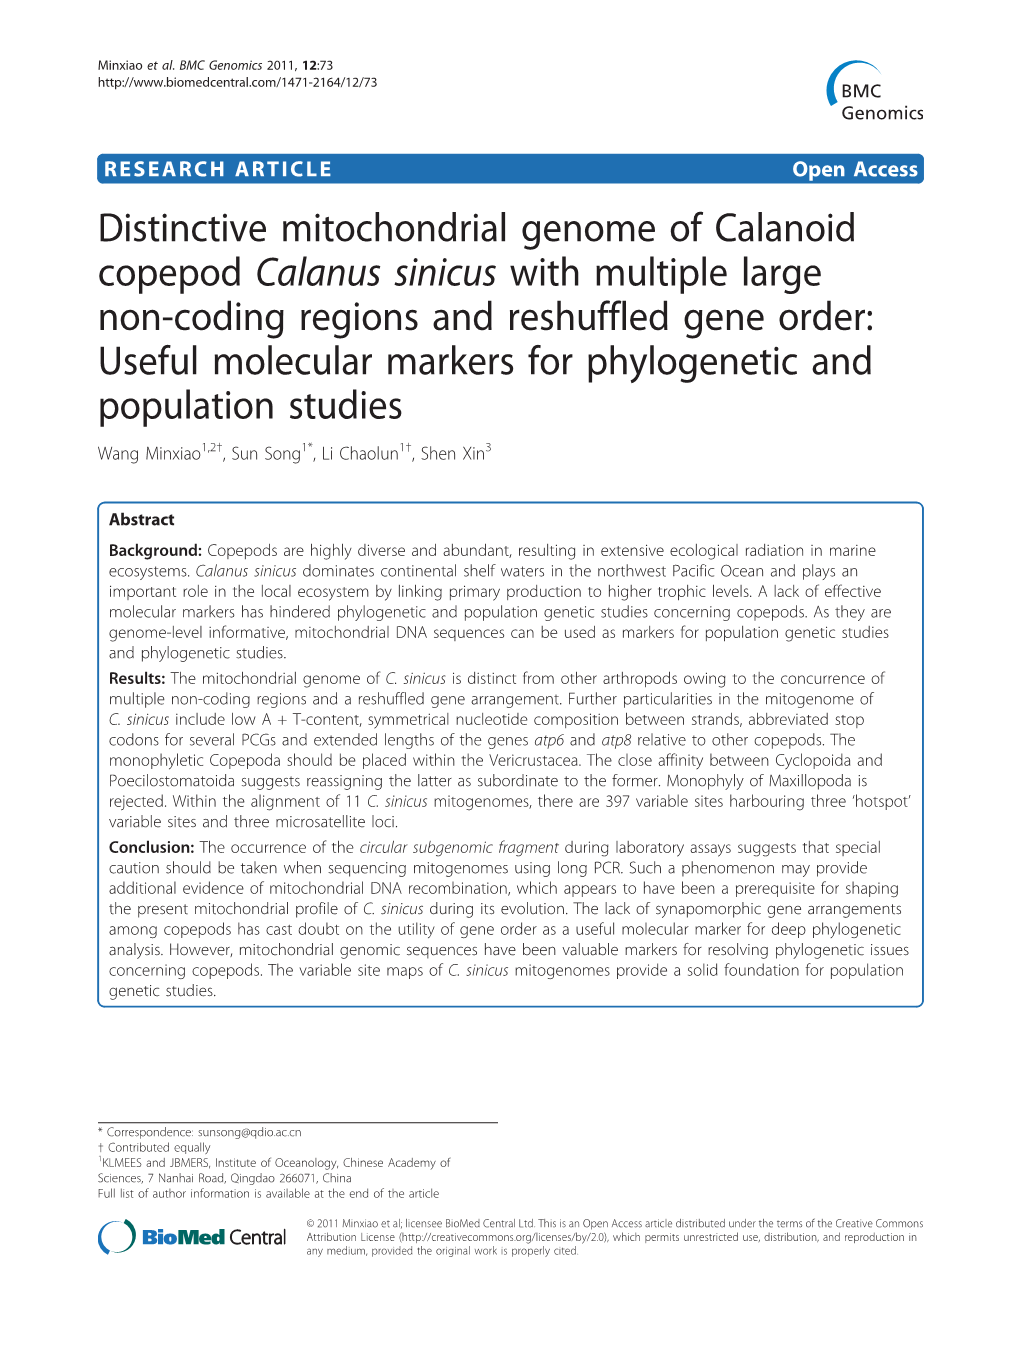 Distinctive Mitochondrial Genome of Calanoid Copepod Calanus Sinicus